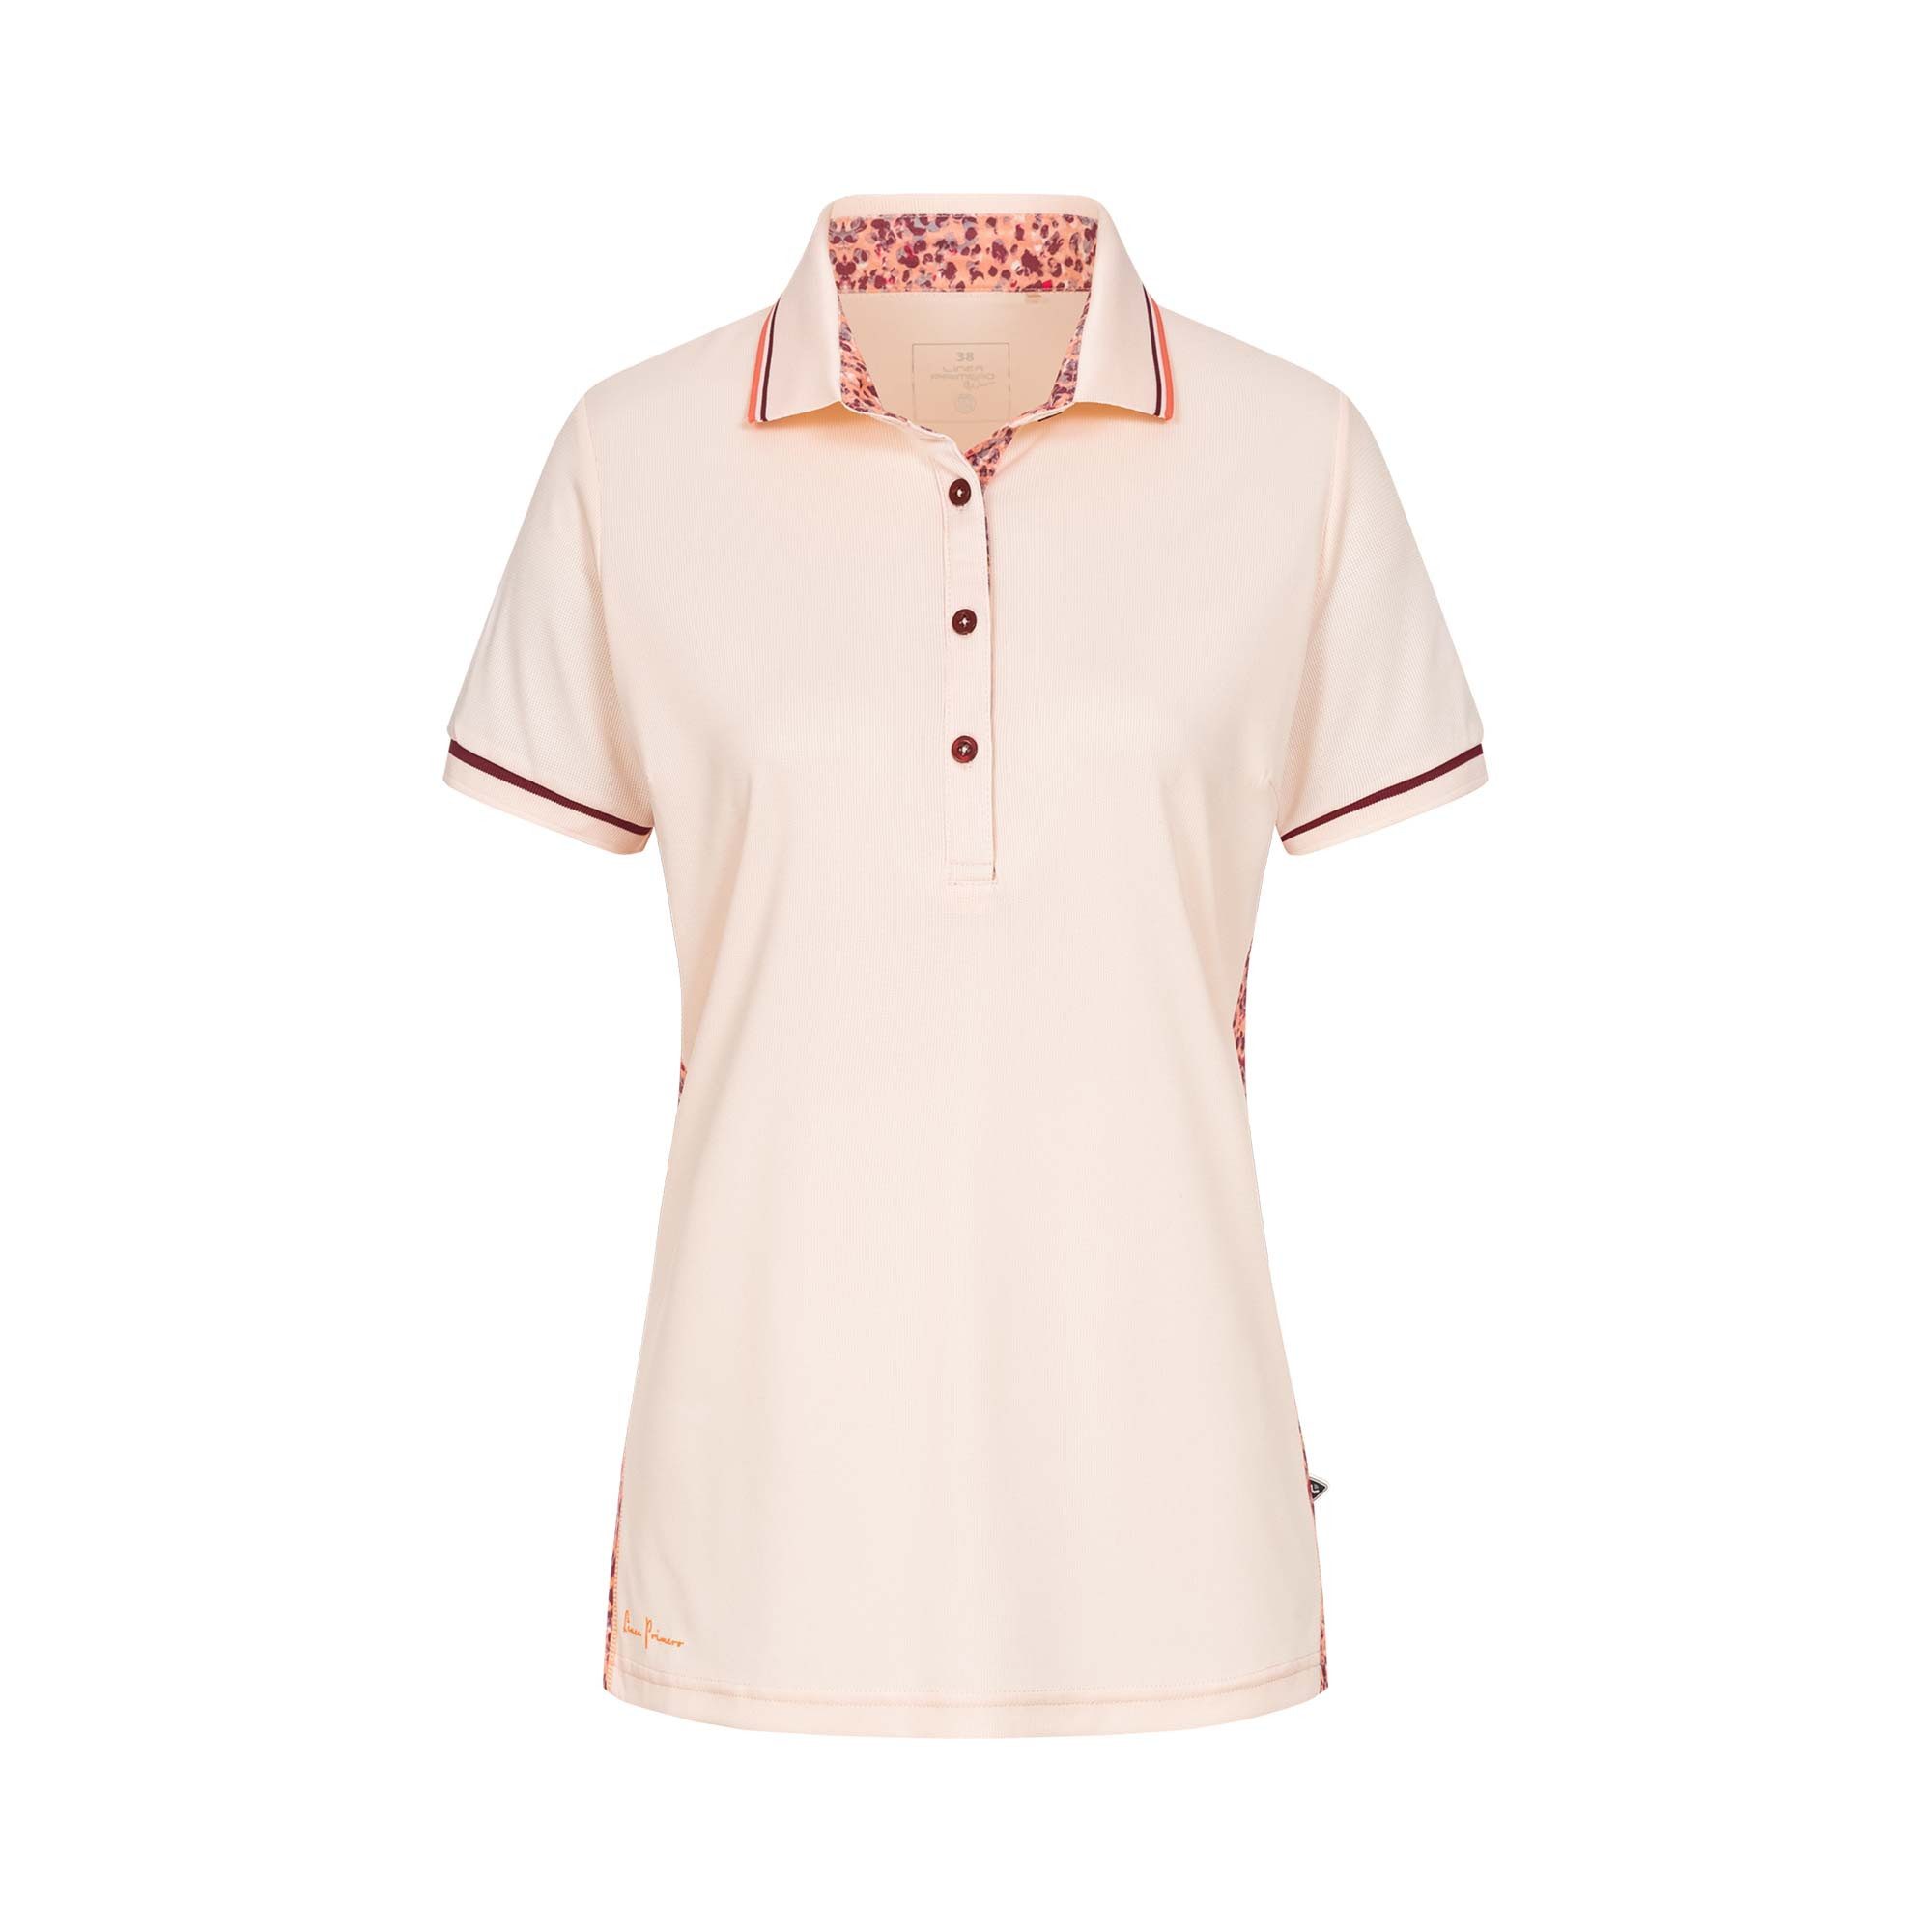 DEPROC Active Poloshirt HEDLEY NEW WOMEN auch in Großen Größen erhältlich rosa